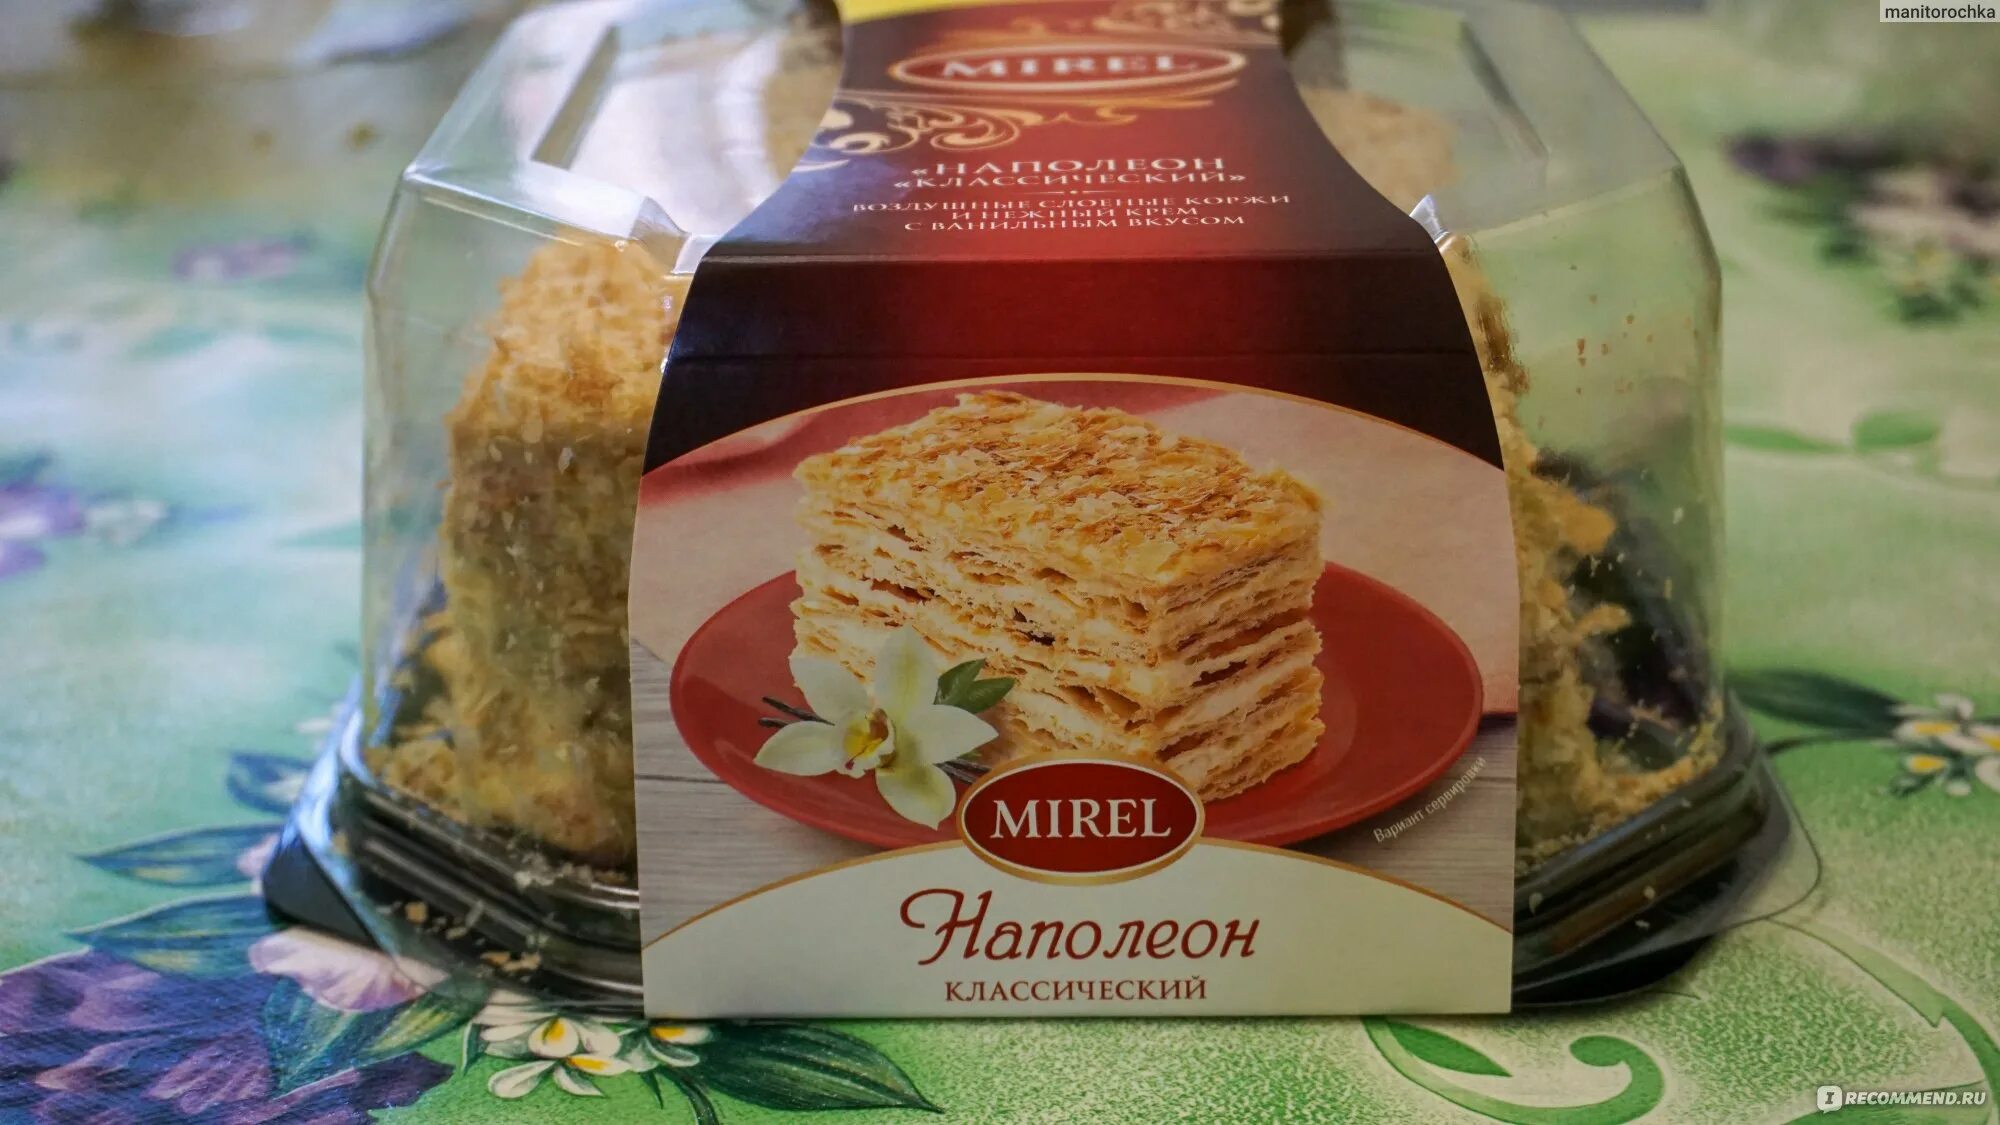 Торт наполеон мирель. Mirel Наполеон классический. Торт Мирель Наполеон Мирэль. Торт Наполеон Мирель состав.